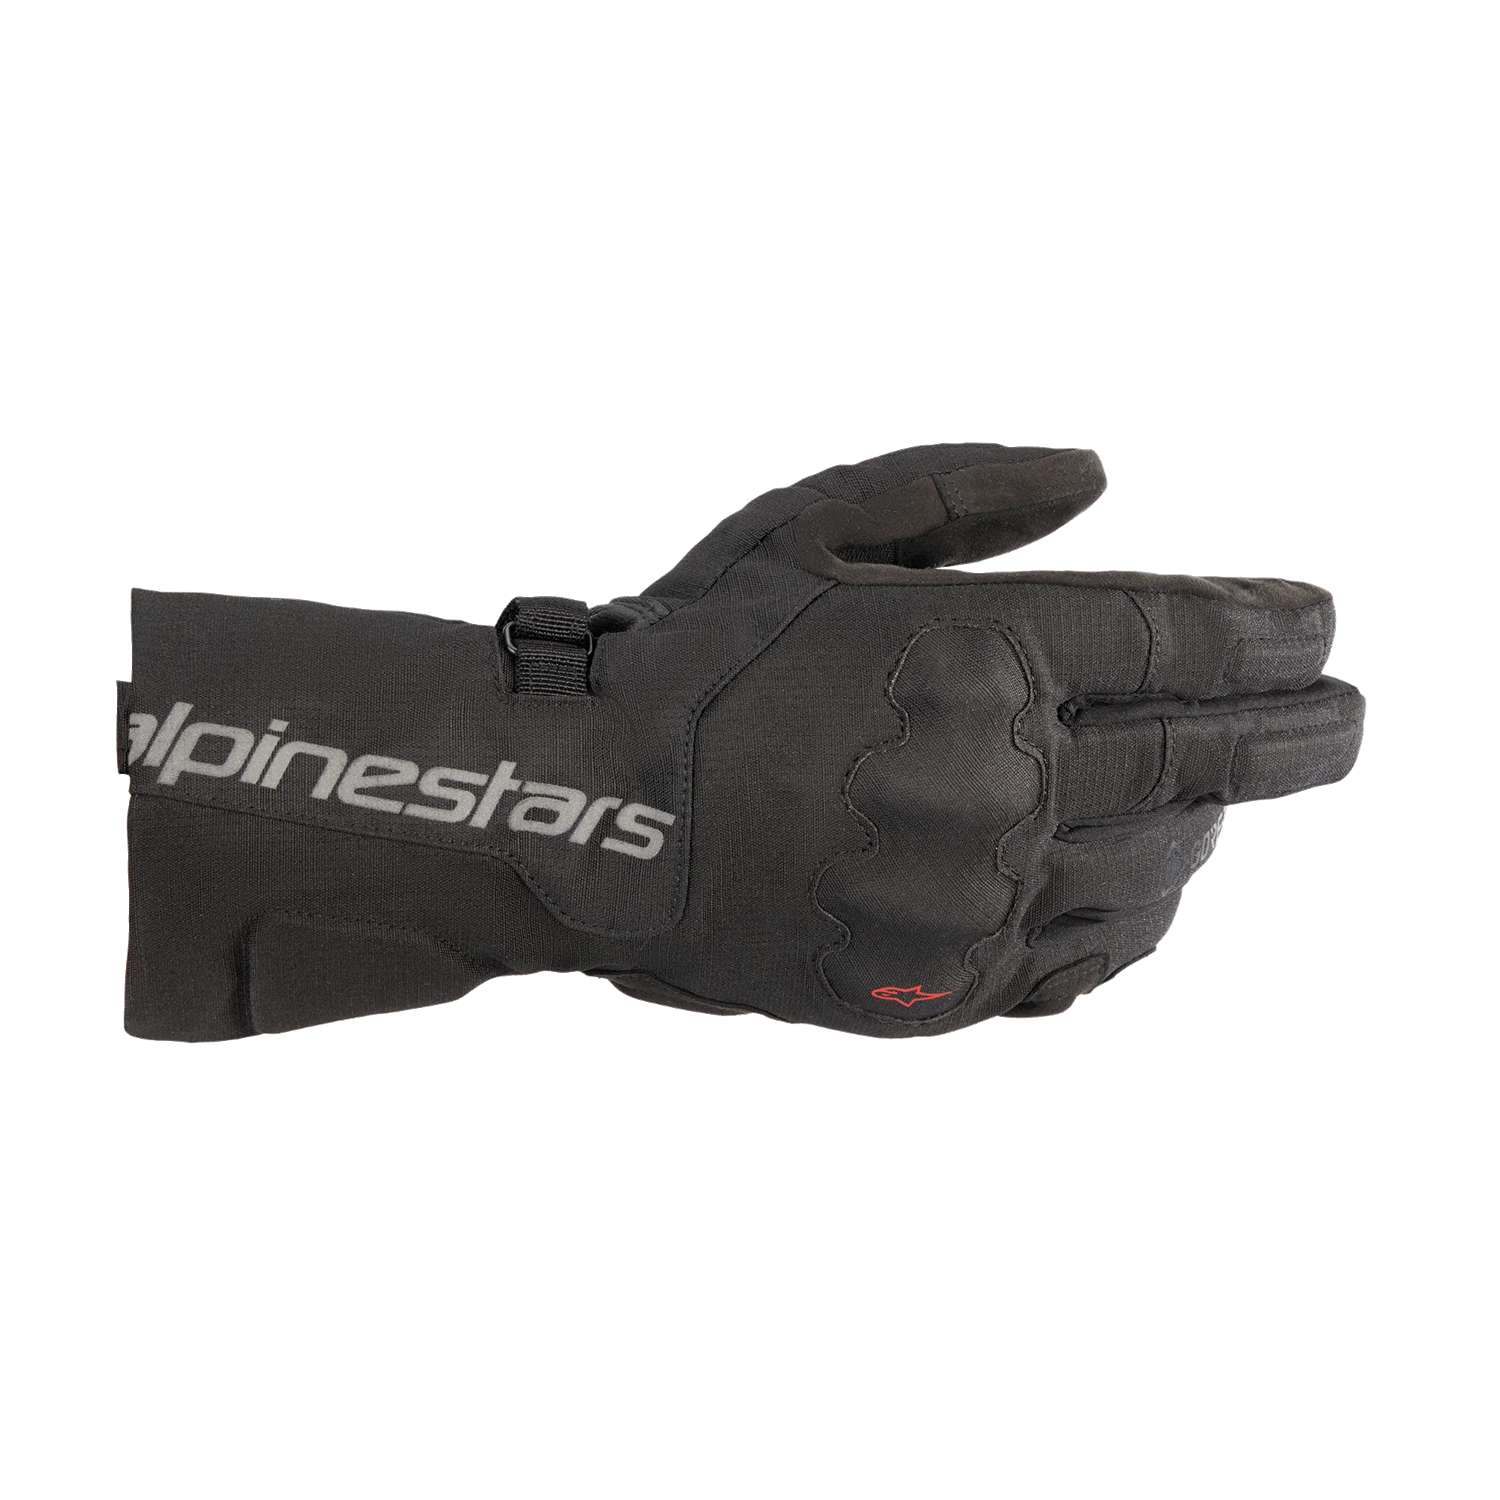 Image of Alpinestars Wr-X Gore-Tex Gloves Black Size L ID 8059347194455